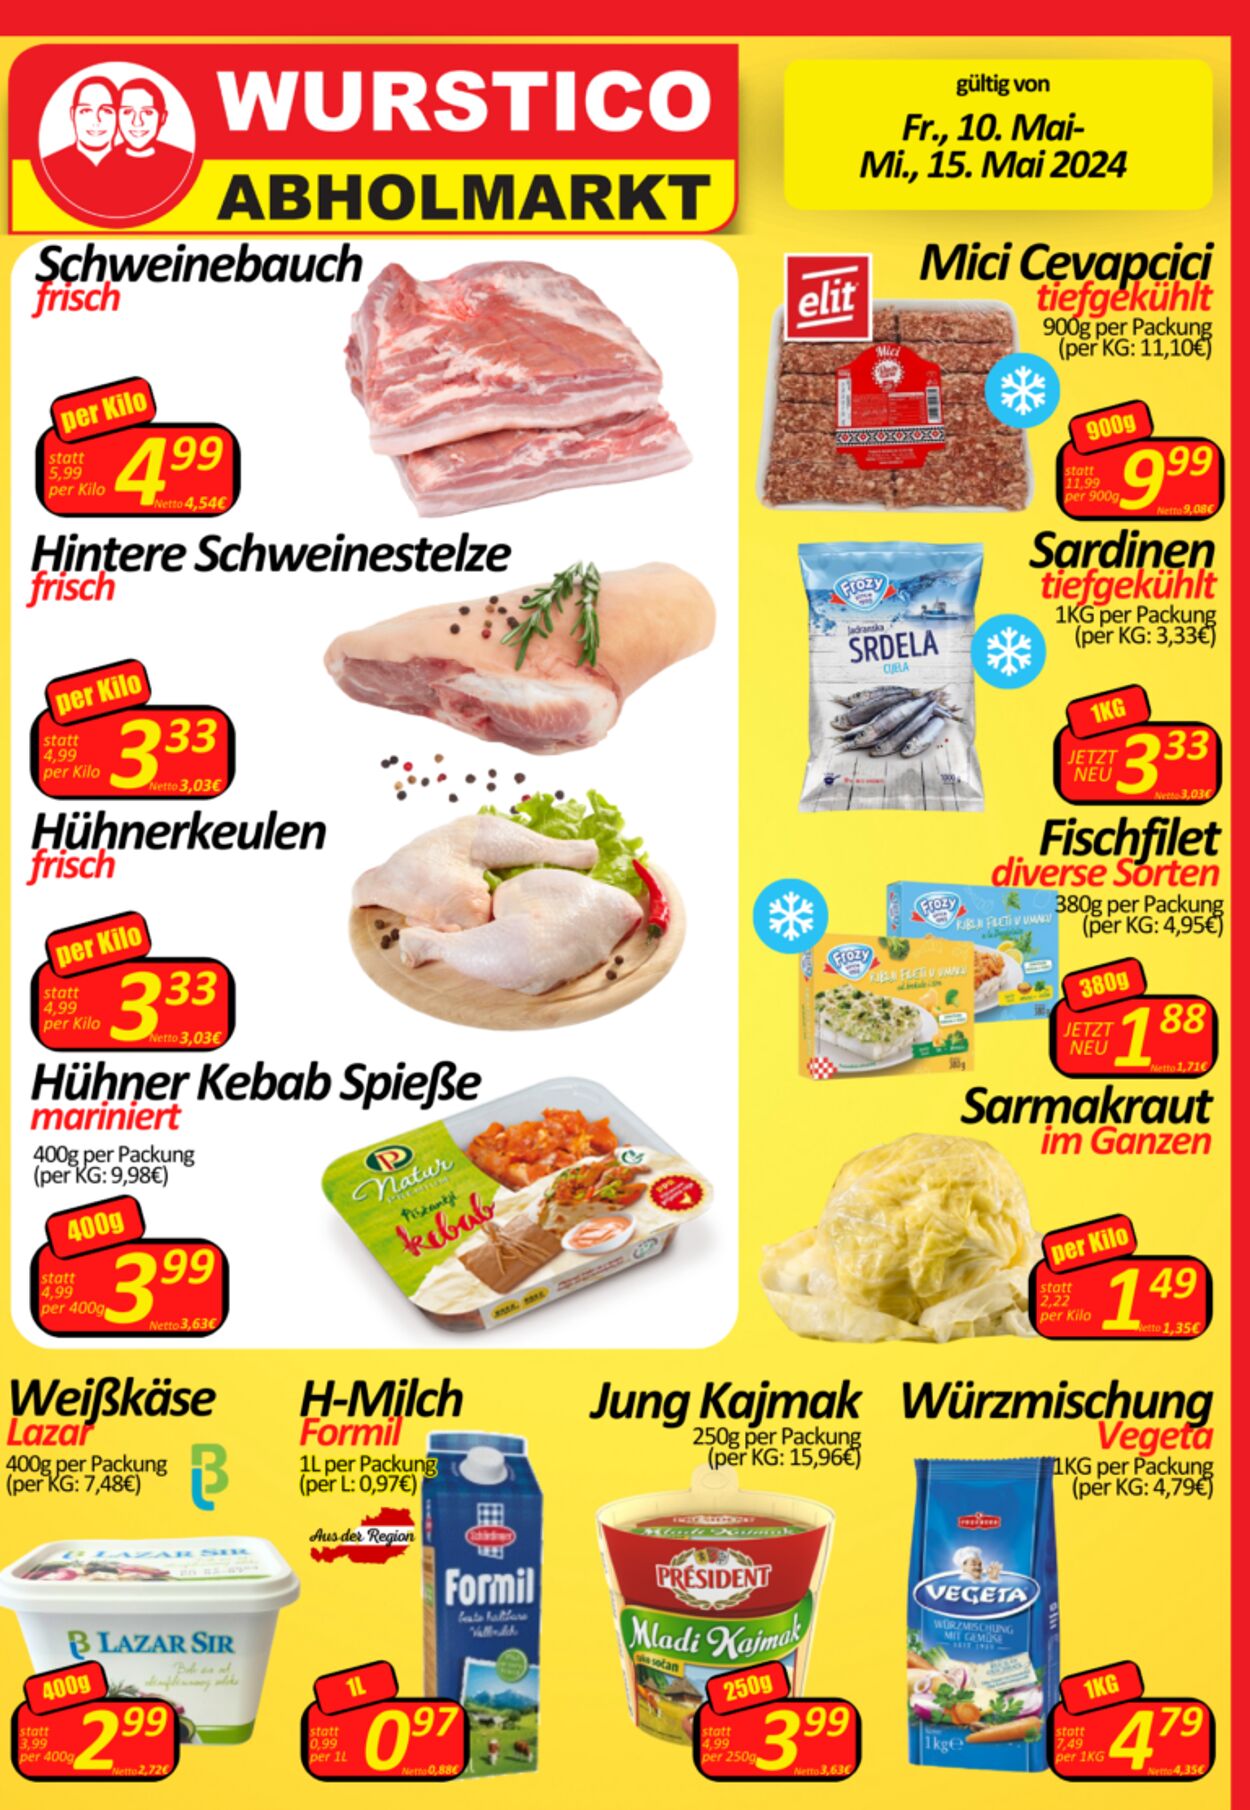 Prospekt Wurstico - Wurstico Abholmarkt – Wurst, Fleischwaren und mehr zu FabrikspreisenAktuelle Angebote bei Wurstico 10 Mai, 2024 - 15 Mai, 2024